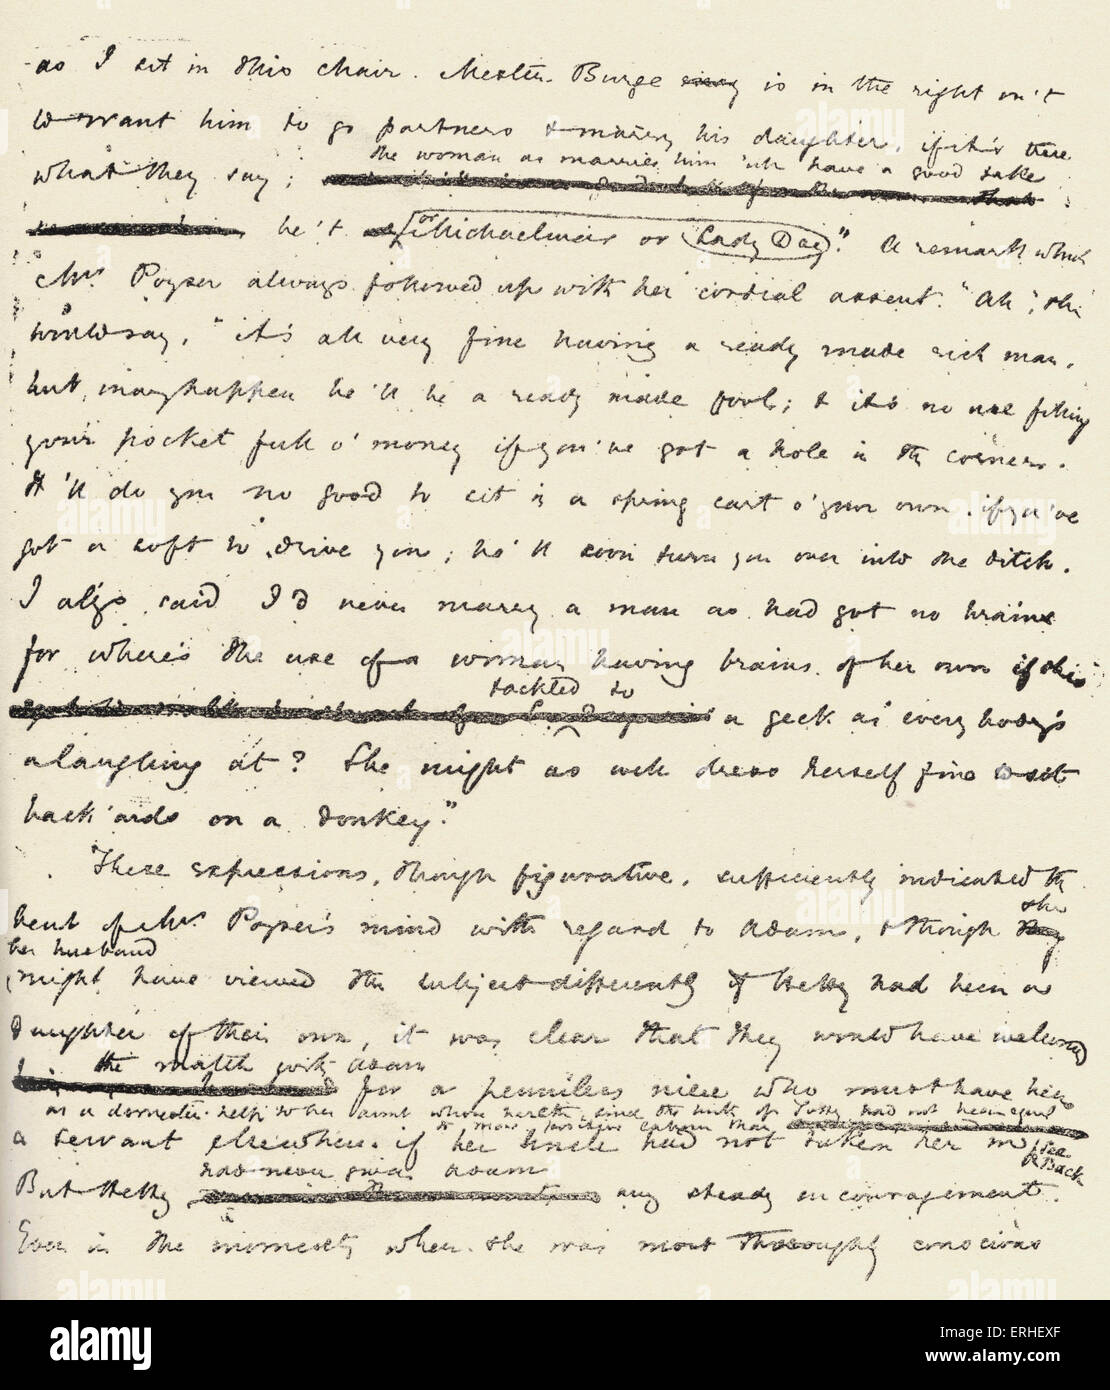 George Eliot - Seite aus dem Manuskript des "Adam Bede" von der englischen Schriftstellerin (Pseudonym von Mary Ann / Marian Evans.) Stockfoto